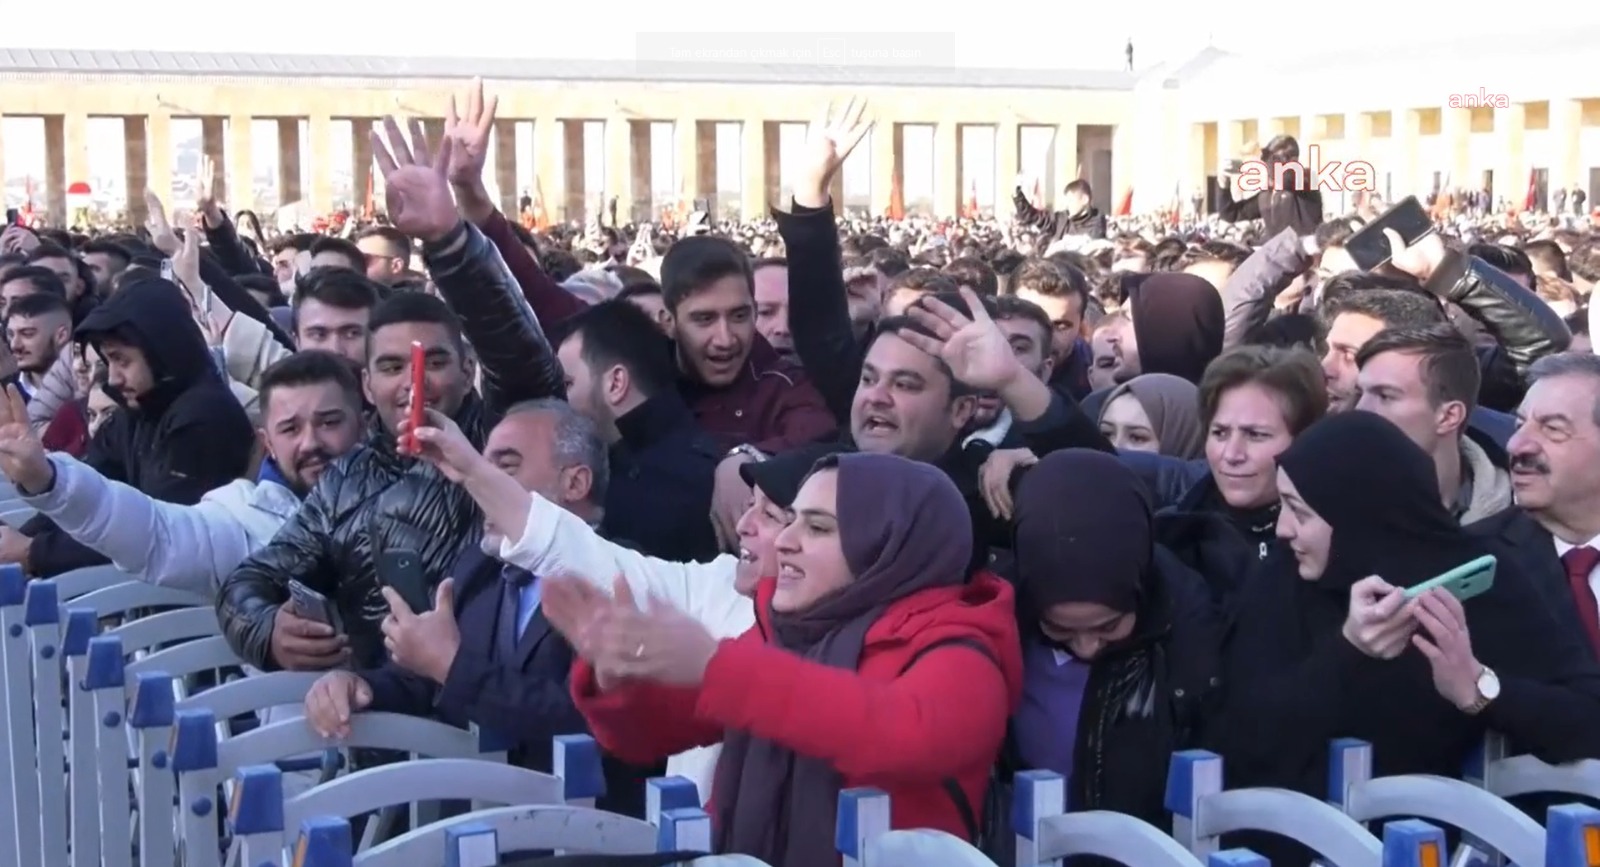 Anıtkabir'deki 10 Kasım töreninde “Her yer Tayyip, her yer Erdoğan” sloganları atıldı